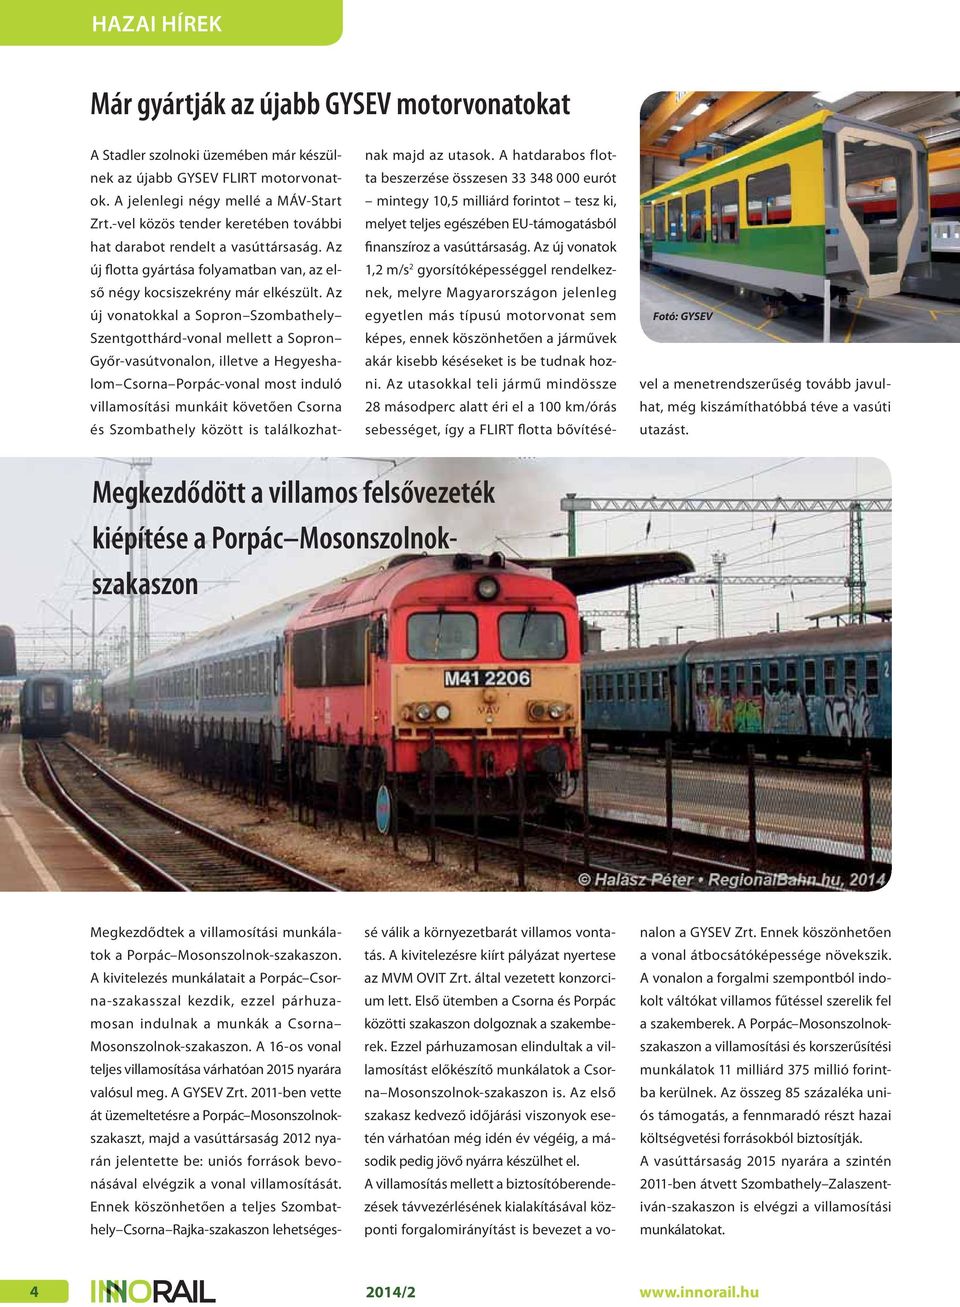 Az új vonatokkal a Sopron Szombathely Szentgotthárd-vonal mellett a Sopron Győr-vasútvonalon, illetve a Hegyeshalom Csorna Porpác-vonal most induló villamosítási munkáit követően Csorna és